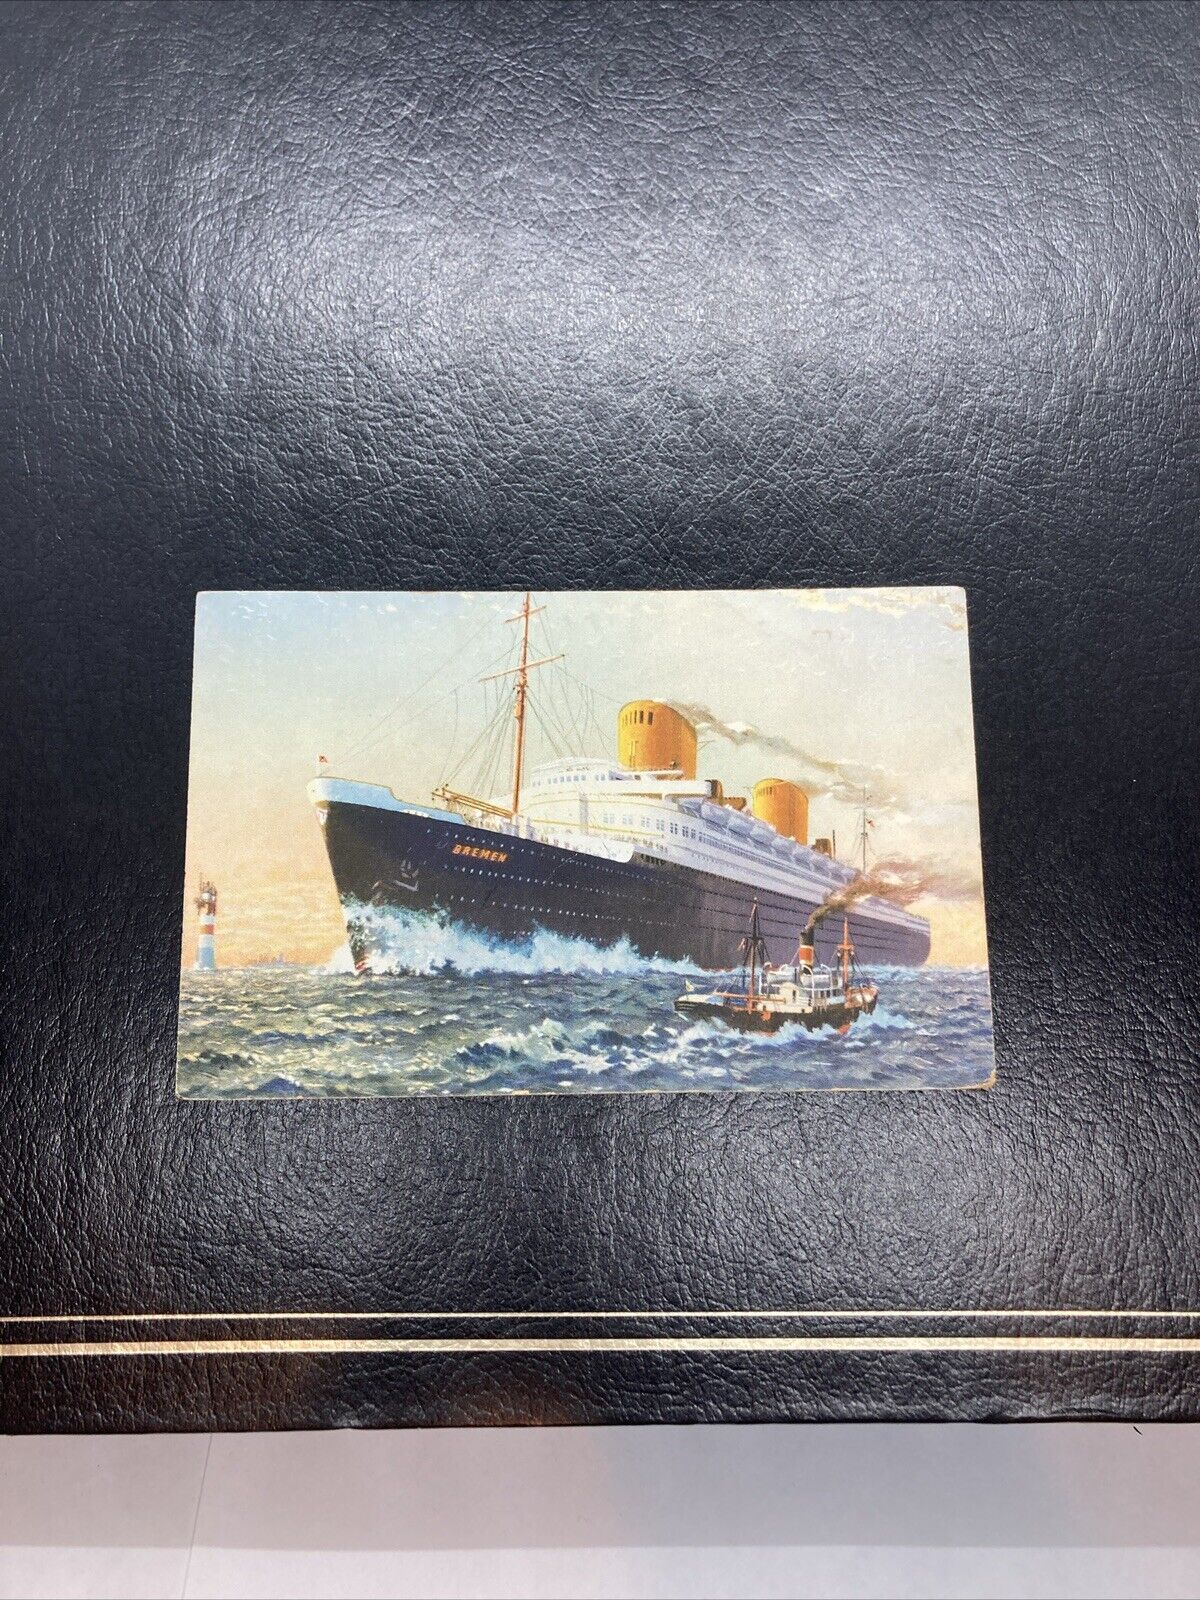 Steamer Norddeutscher Lloyd, Bremen, Germany, Vintage Postcard Unposted